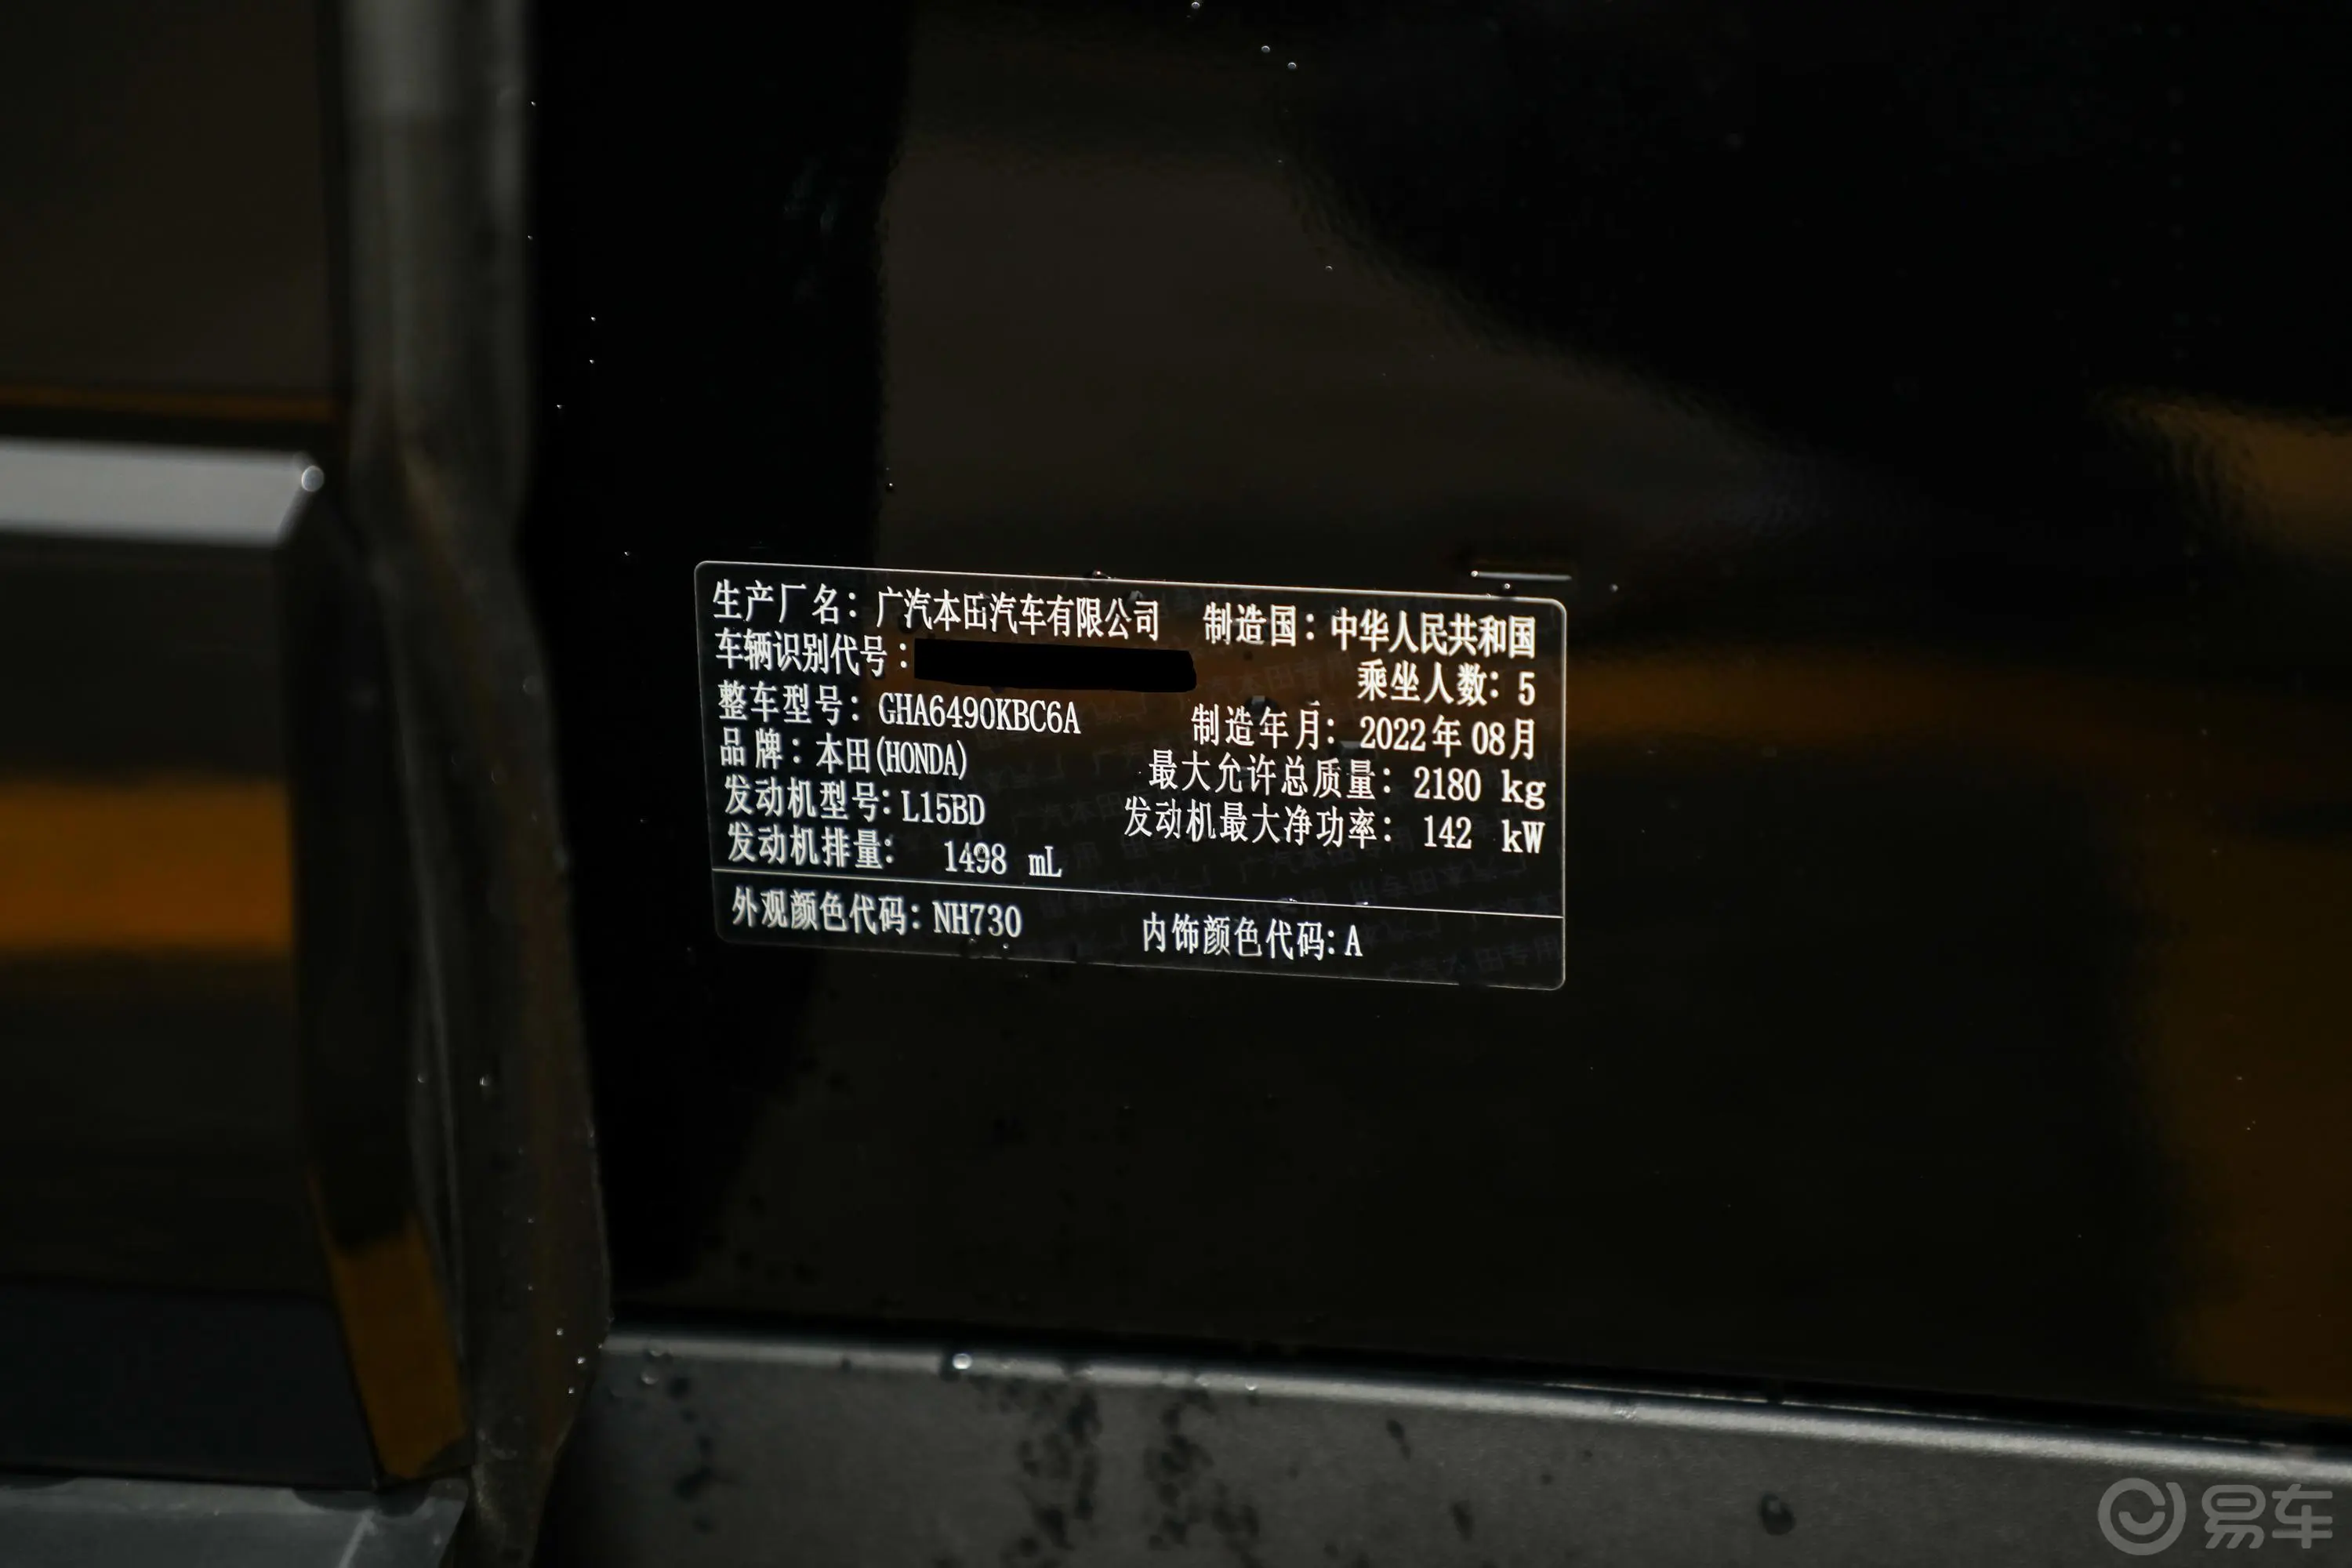 冠道240TURBO CVT两驱限量纪念版车辆信息铭牌